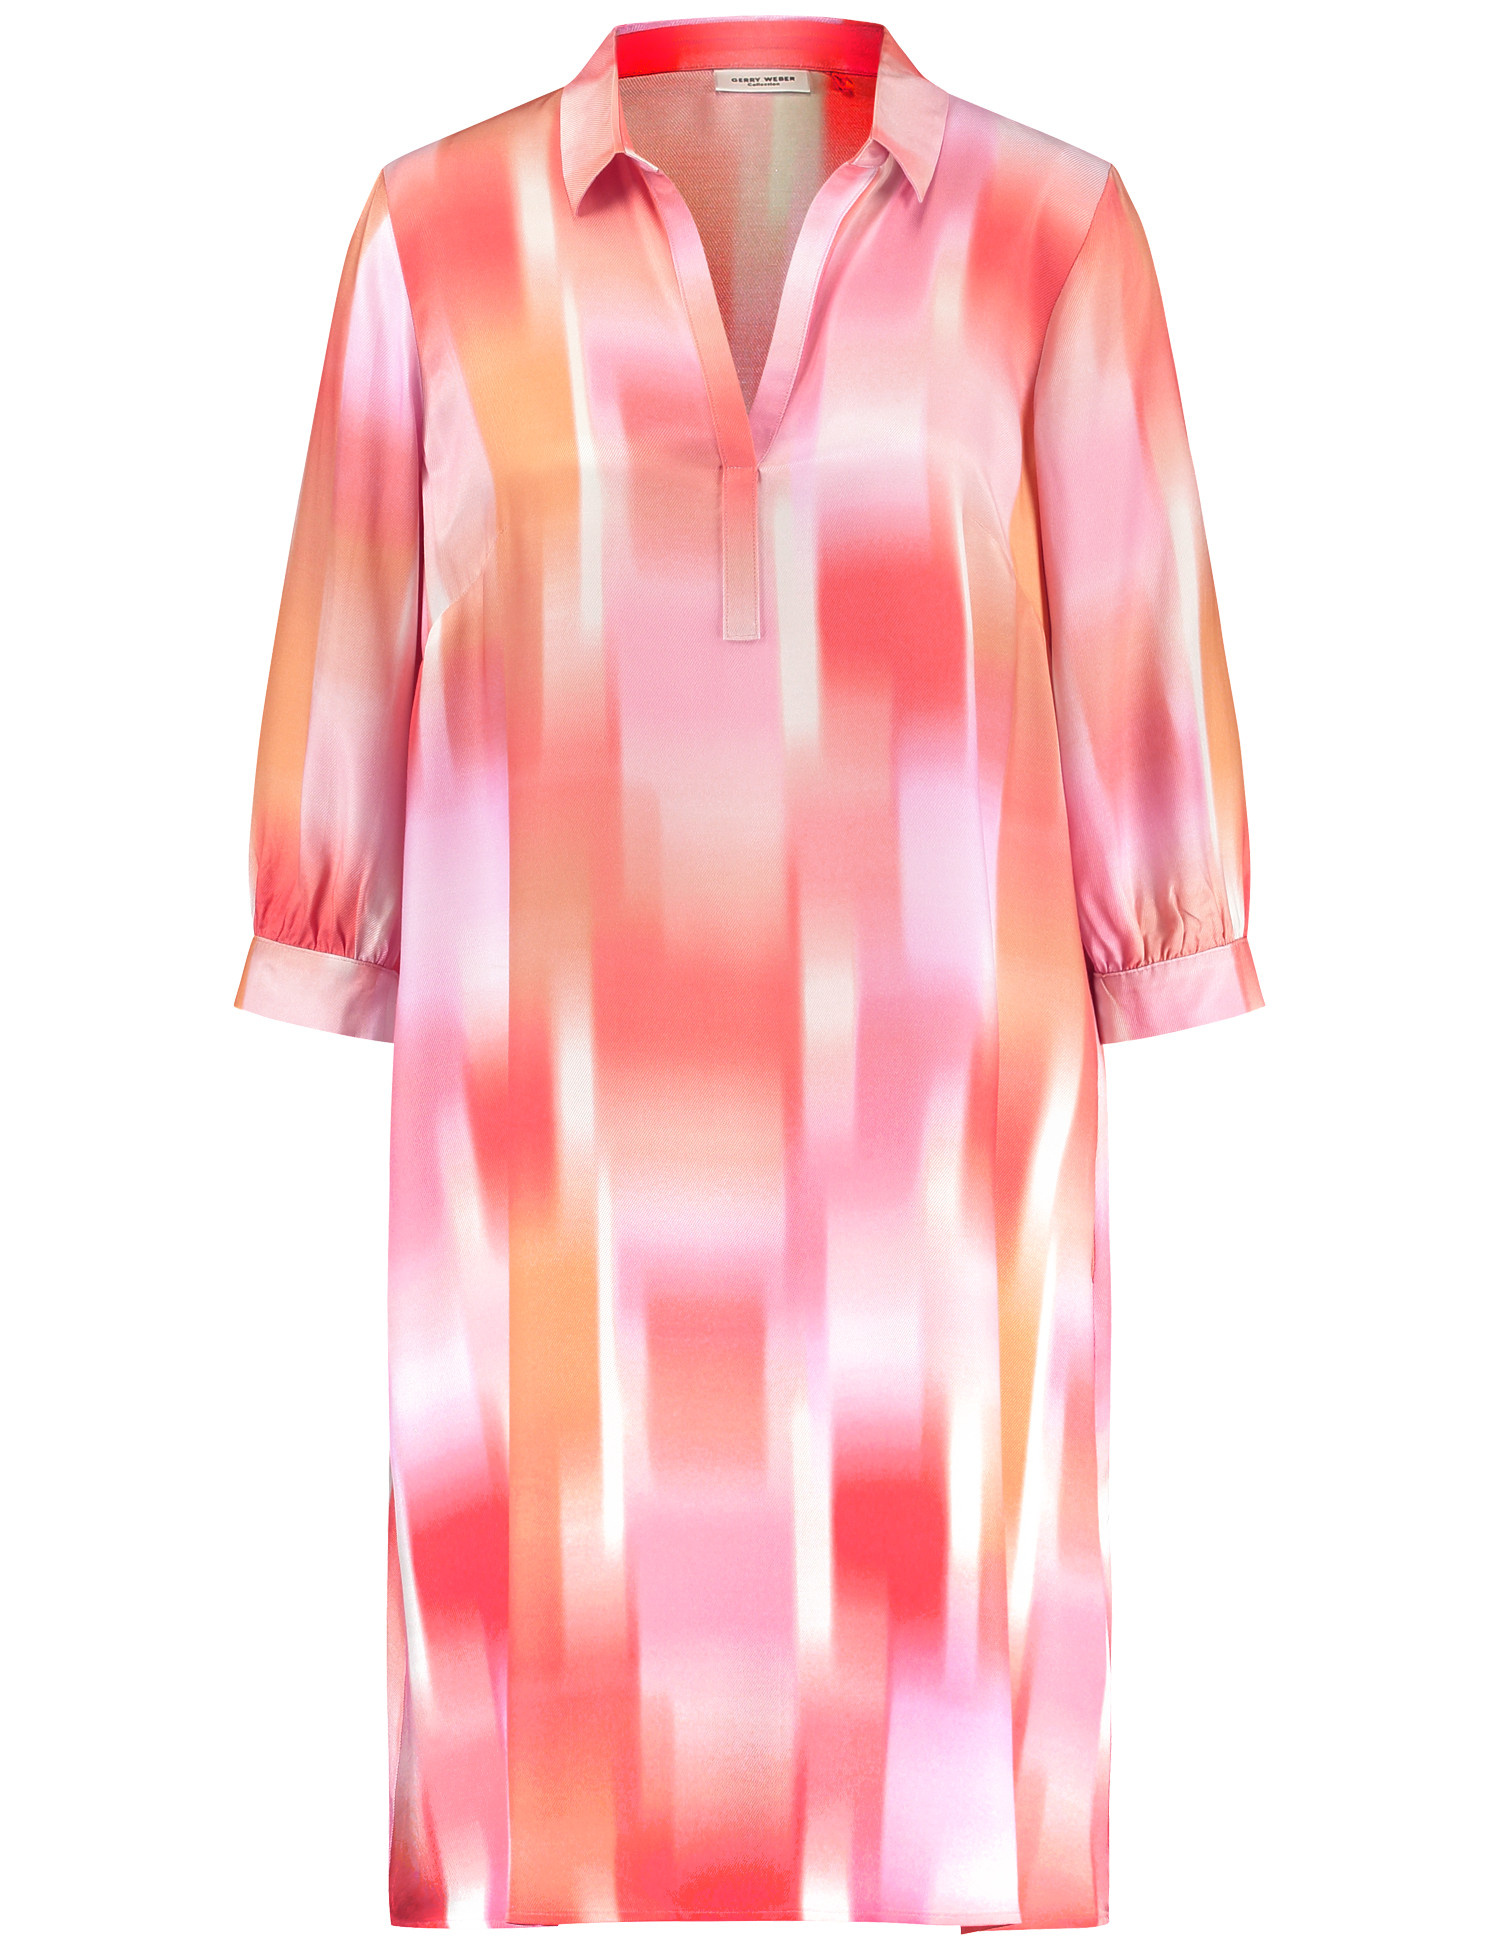 GERRY WEBER Damen Nachhaltiges Blusenkleid 3/4 Arm Mit Kragen Viskose Pink gemustert, 36 von Gerry Weber